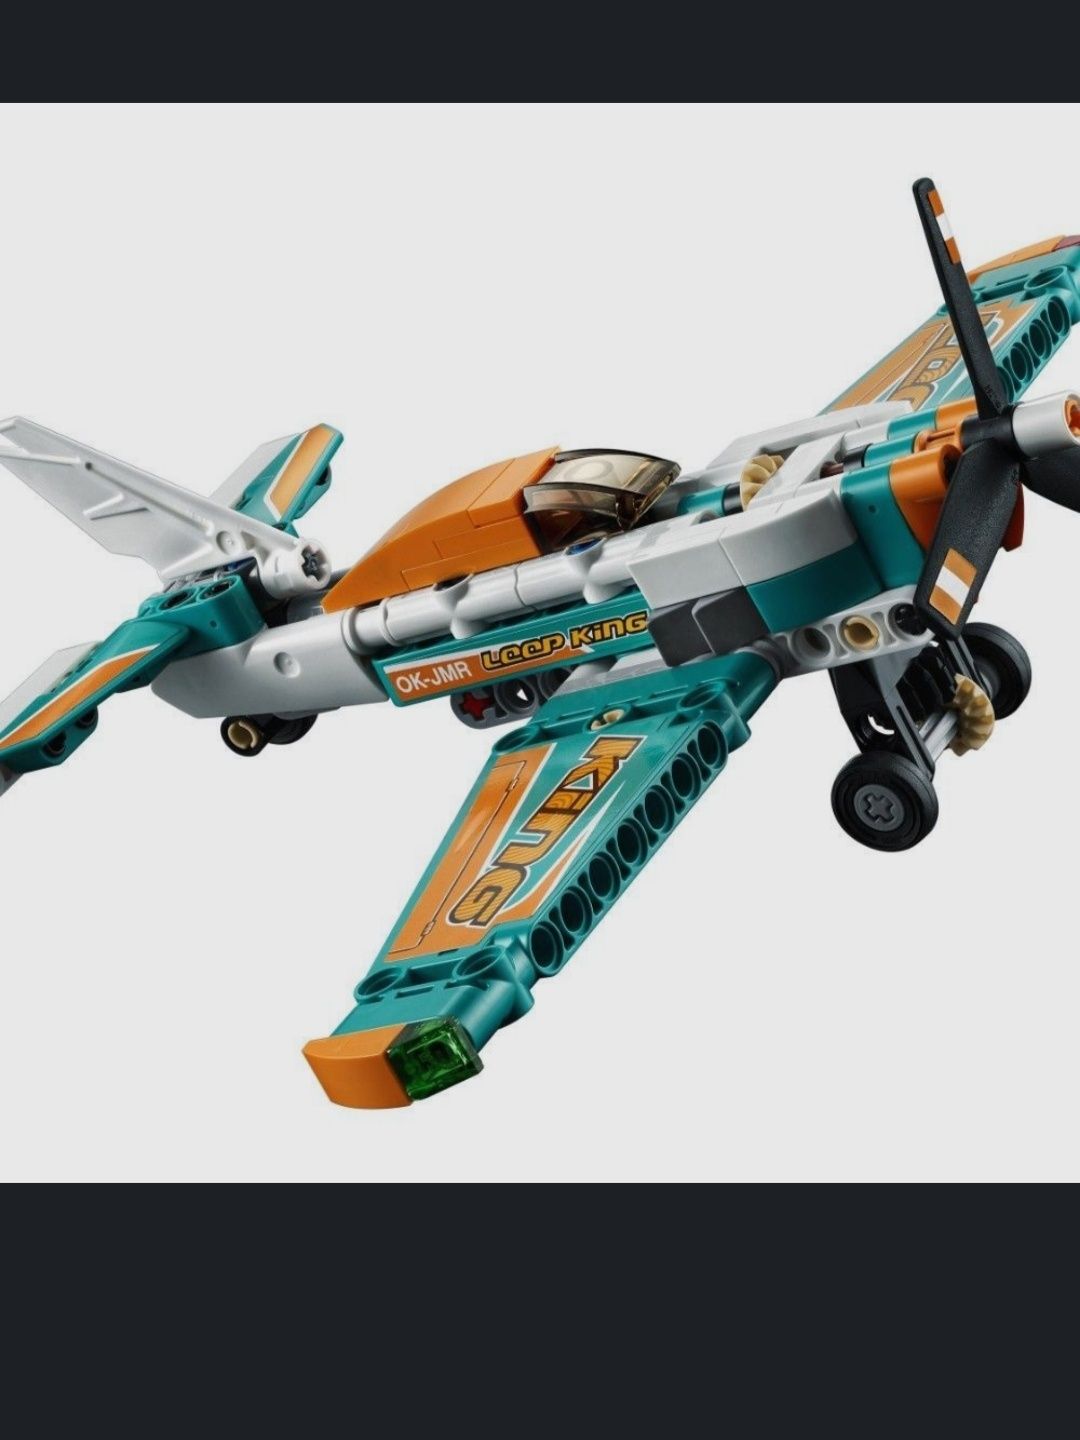 Бесплатная доставка Конструктор LEGO Technic 42117 Гоночный самолёт